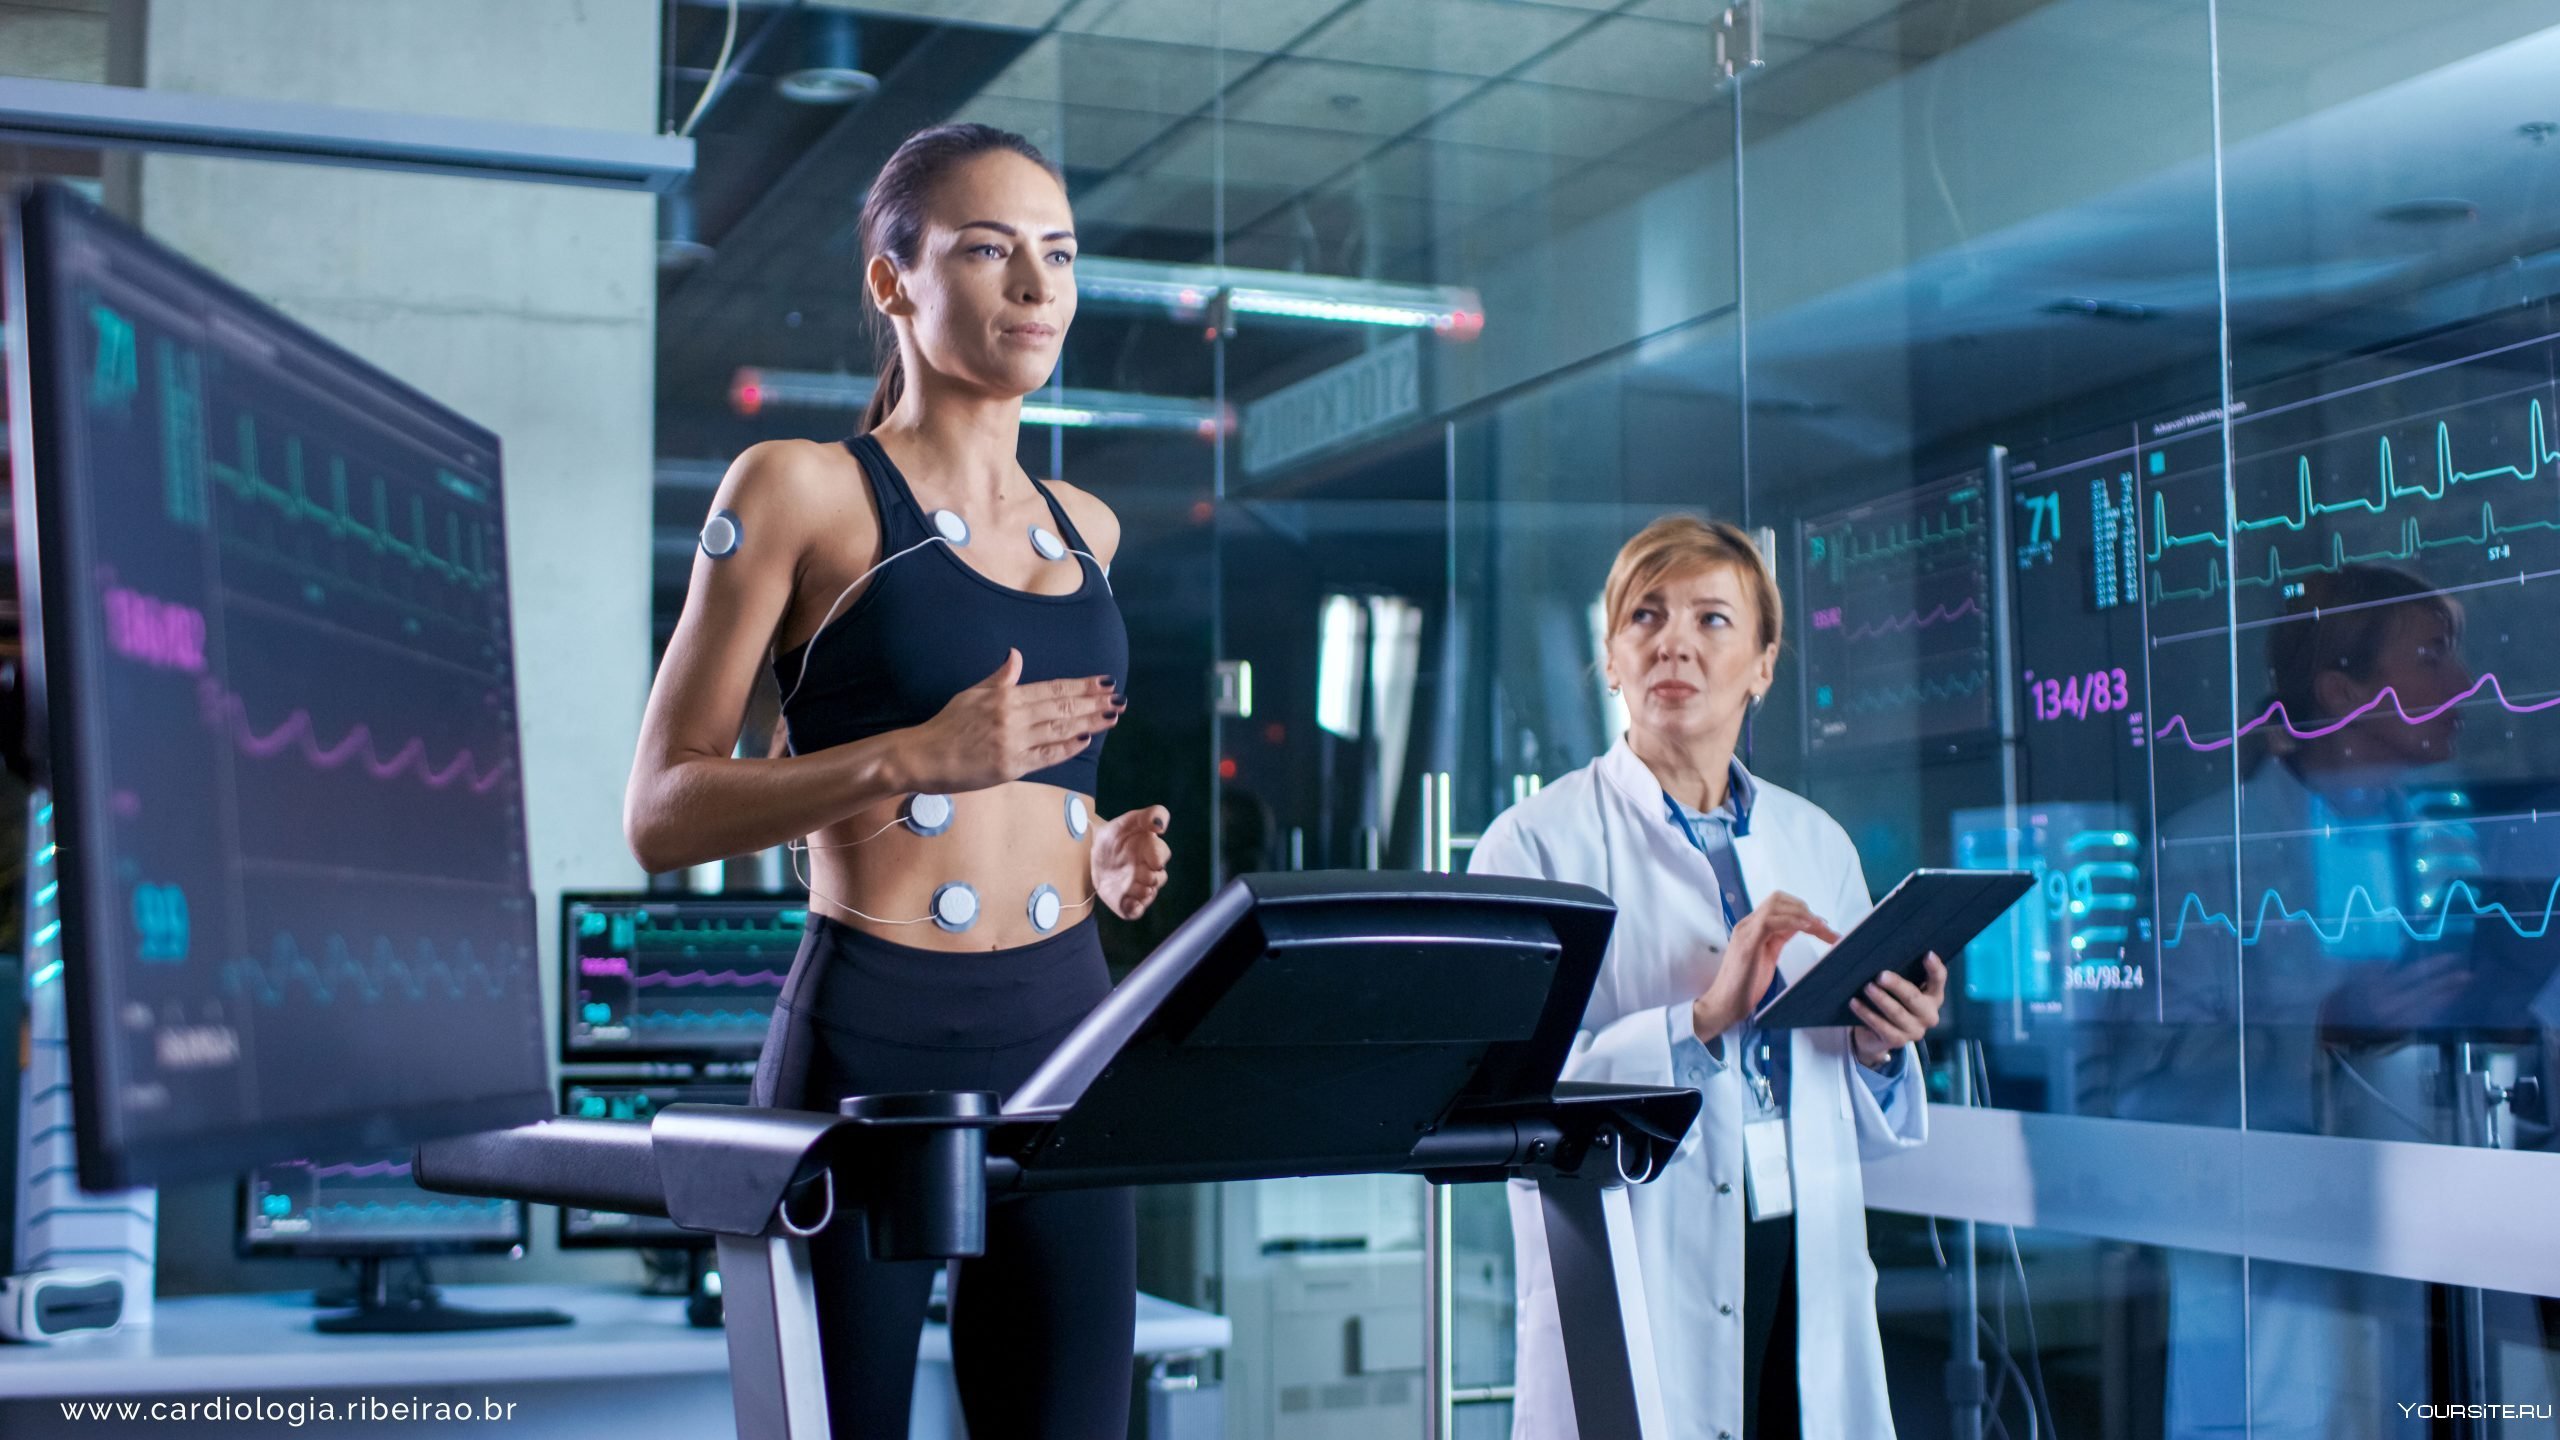 Персональные данные спортсменов. Спортивное исследование. Спорт и медицина. Женщины спортивные врачи. Технологии в спорте.